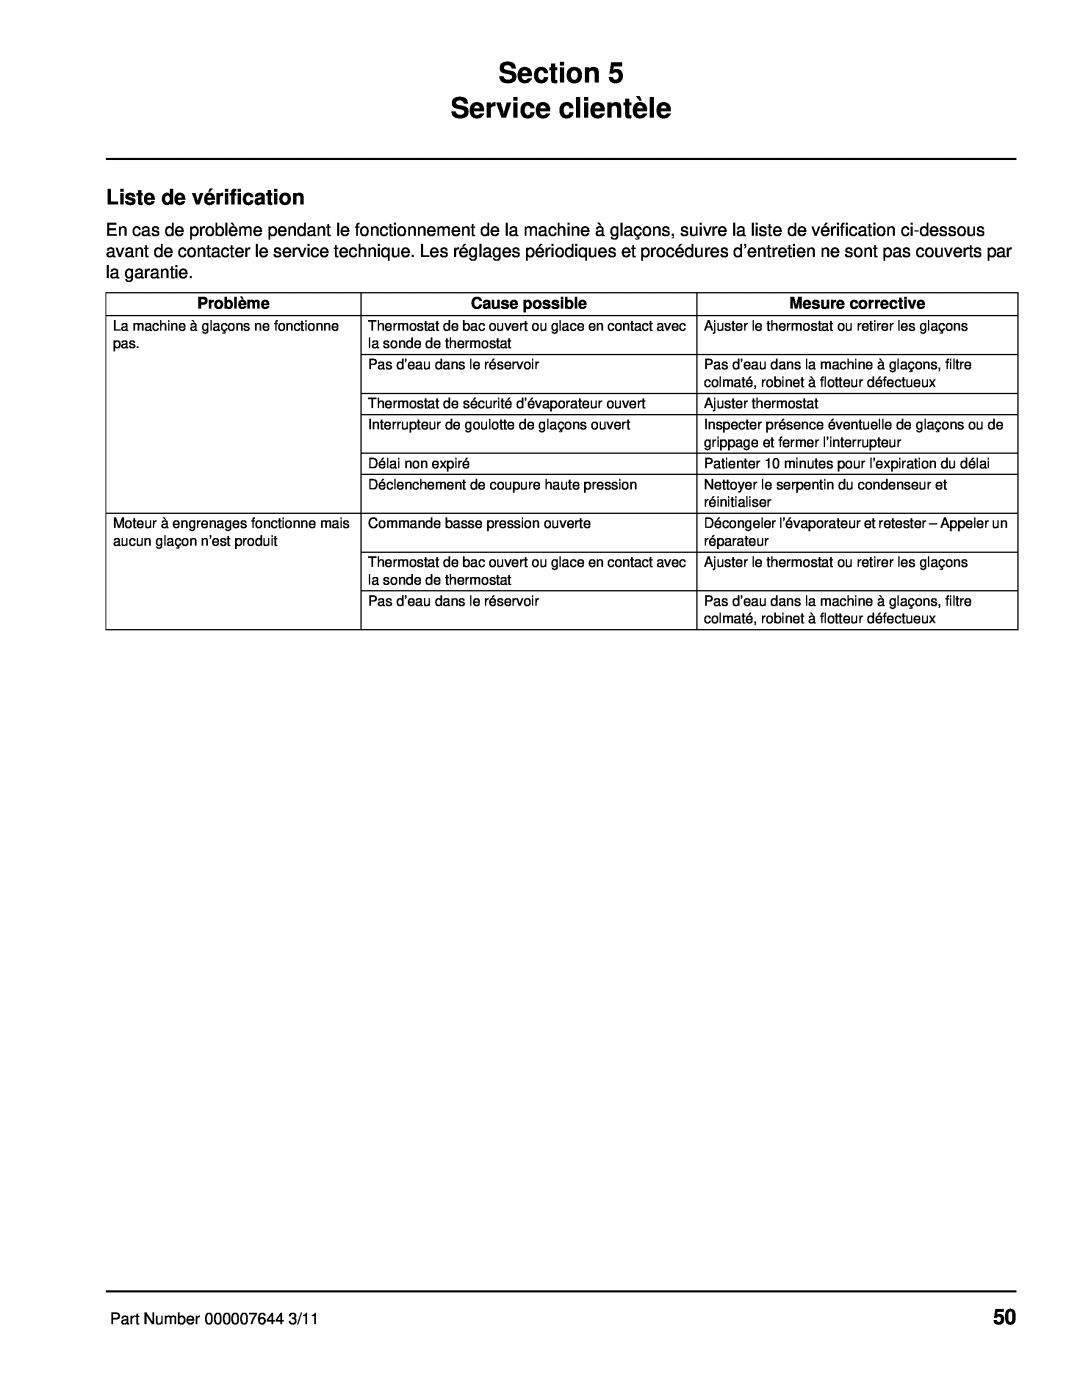 Manitowoc Ice RF manual Section Service clientèle, Liste de vérification 